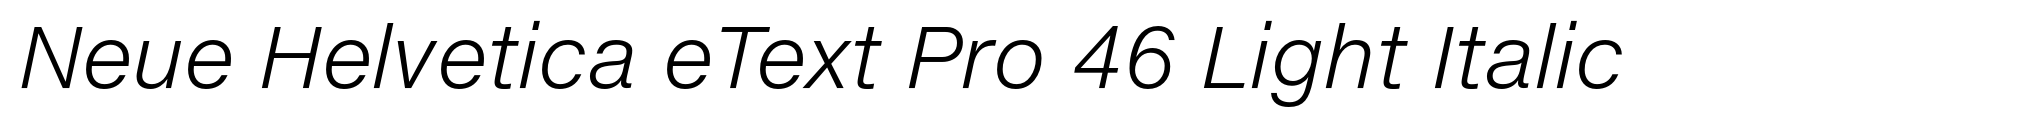 Neue Helvetica eText Pro 46 Light Italic image